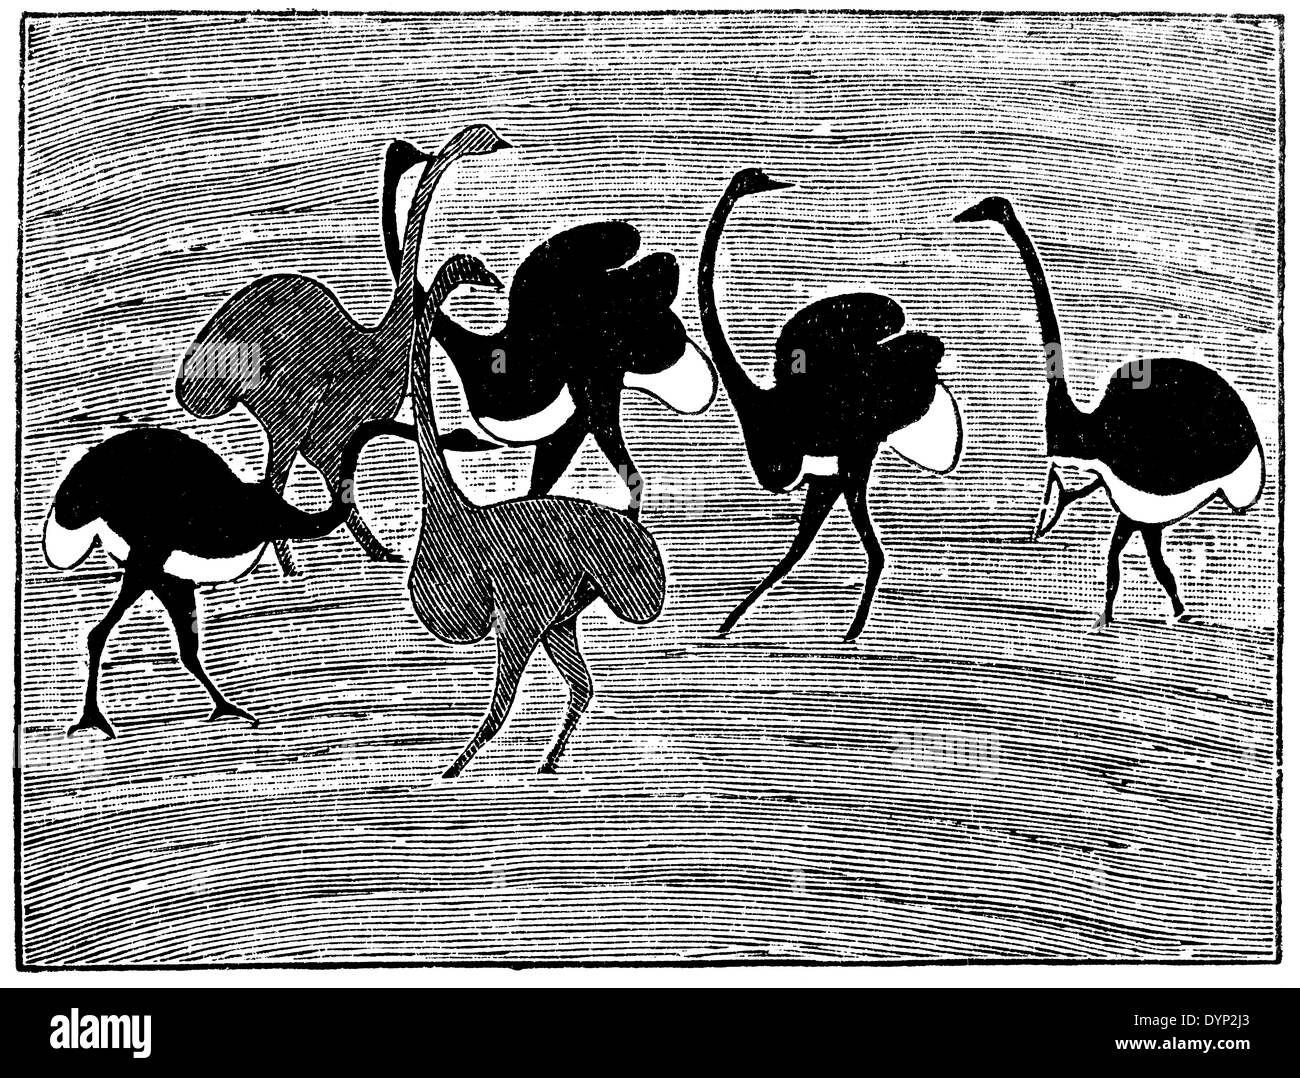 Grotte d'autruche, peinture murale, Wittebergen indigènes coloniaux, Afrique du Sud, de l'illustration de l'Encyclopédie Soviétique, 1926 Banque D'Images